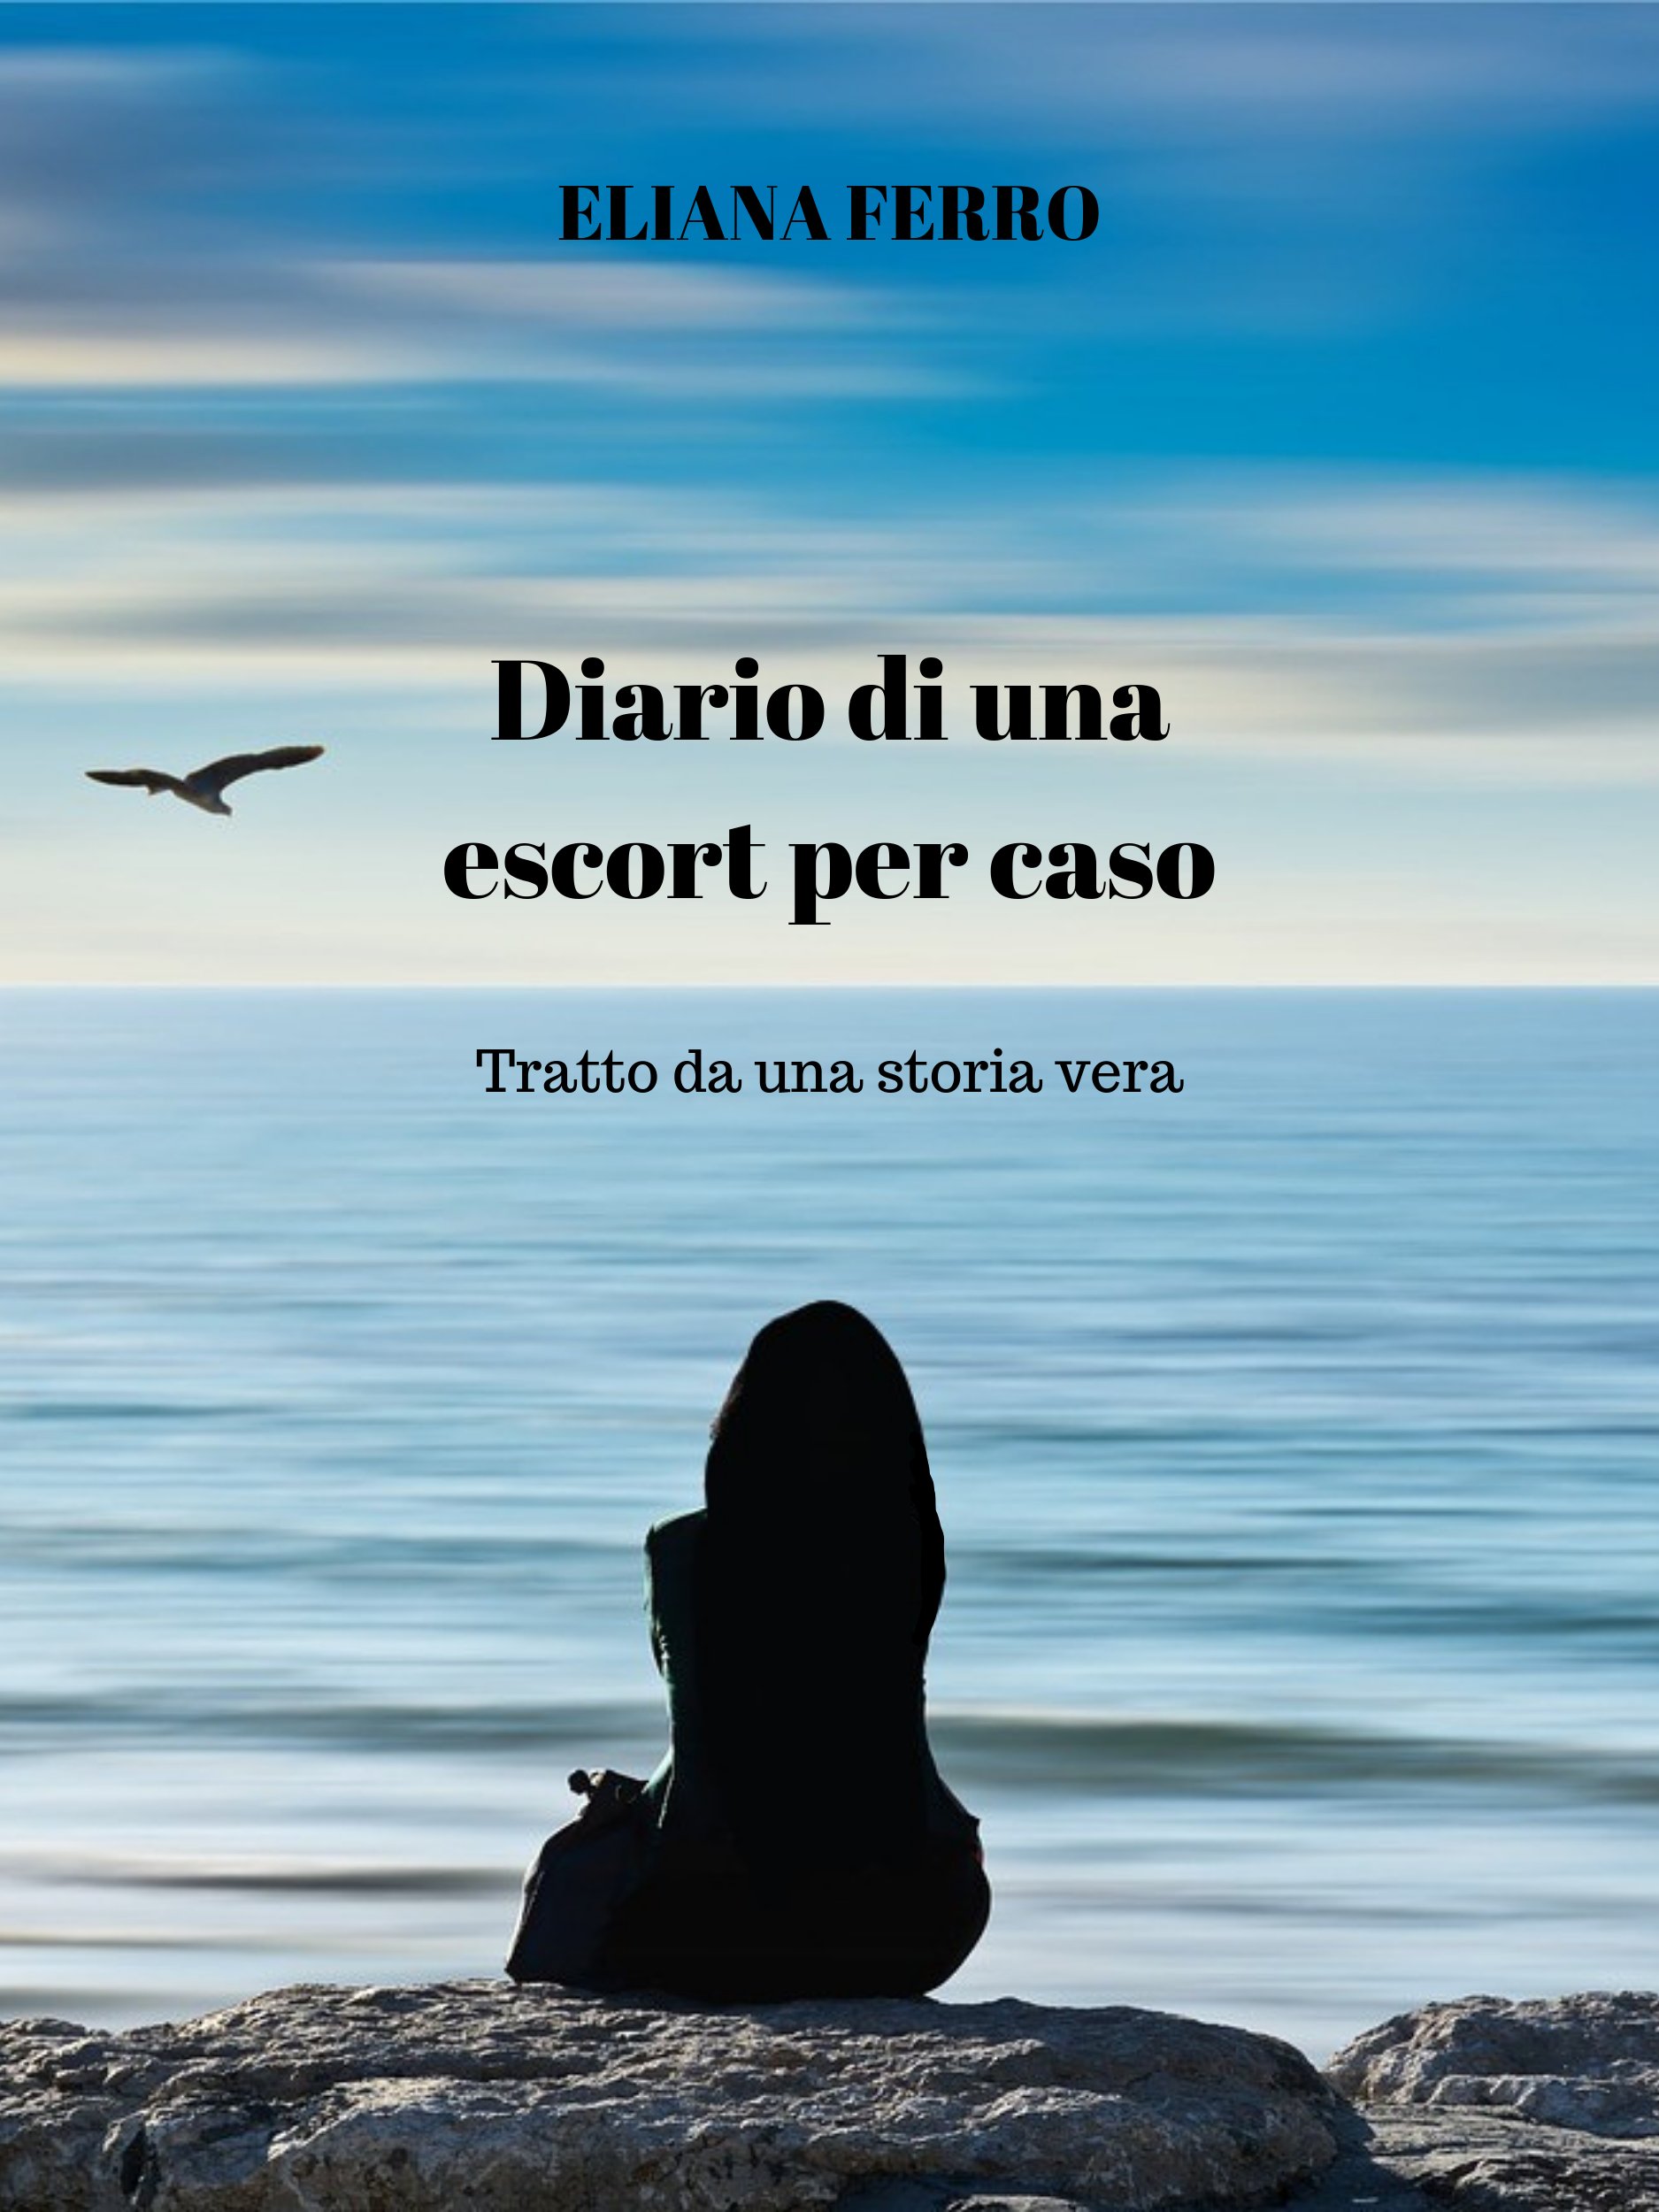 Eliana Ferro presenta il romanzo “Diario di una escort per caso: Tratto da una storia vera”